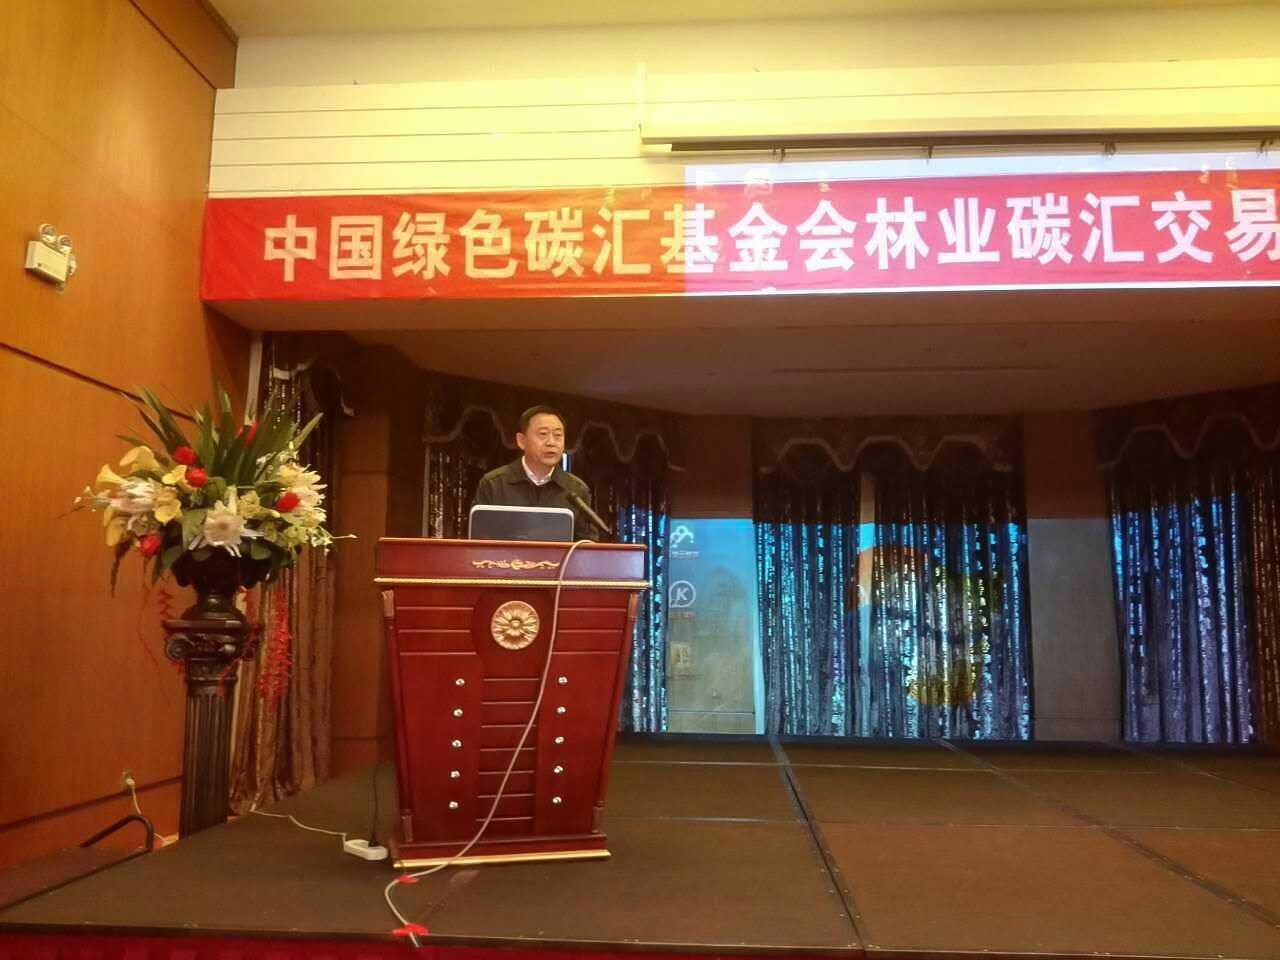 2016年12月15-16日，由中国绿色碳汇基金会主办的2016年第二期林业碳汇项目开发培训班在位于云南省腾冲市的林业与应对气候变化国际培训中心成功举办。中国绿色碳汇基金会理事长杜永胜出席活动并讲话